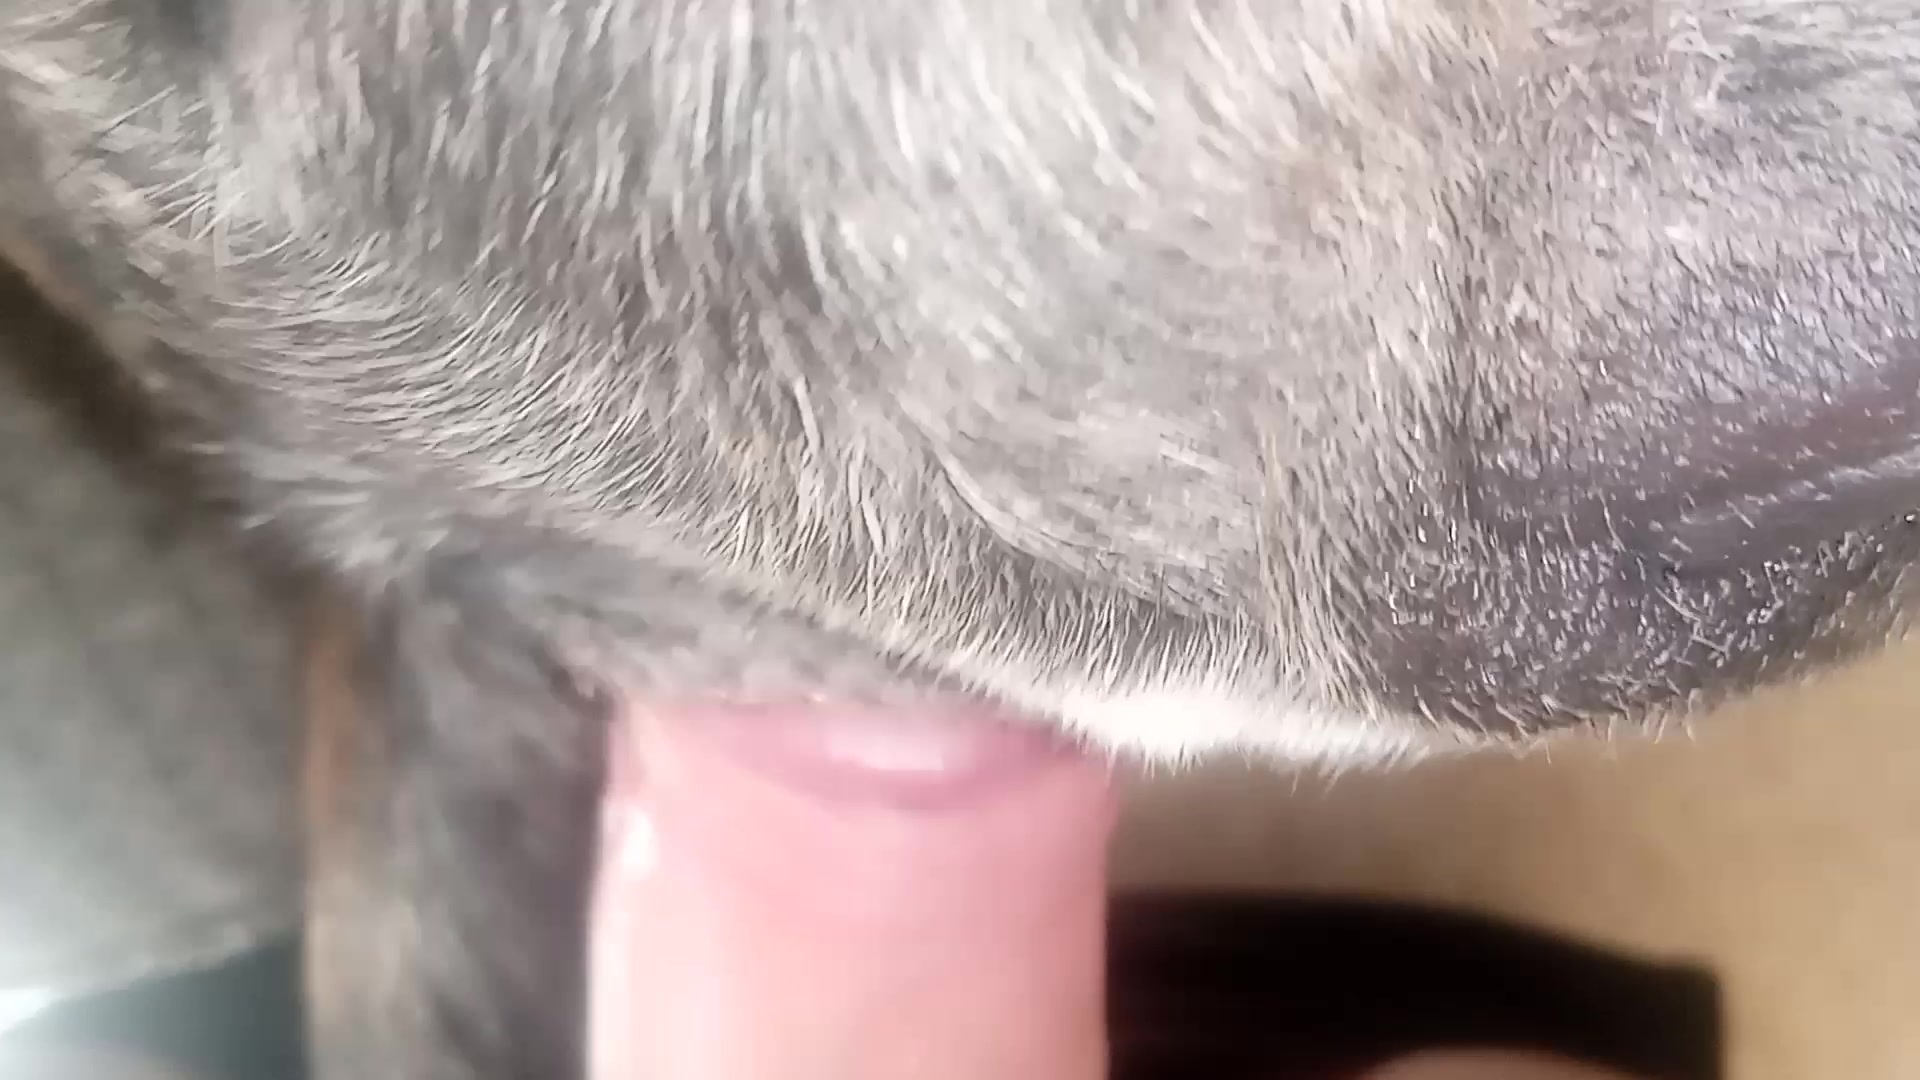 Cachorro comendo cu do homem